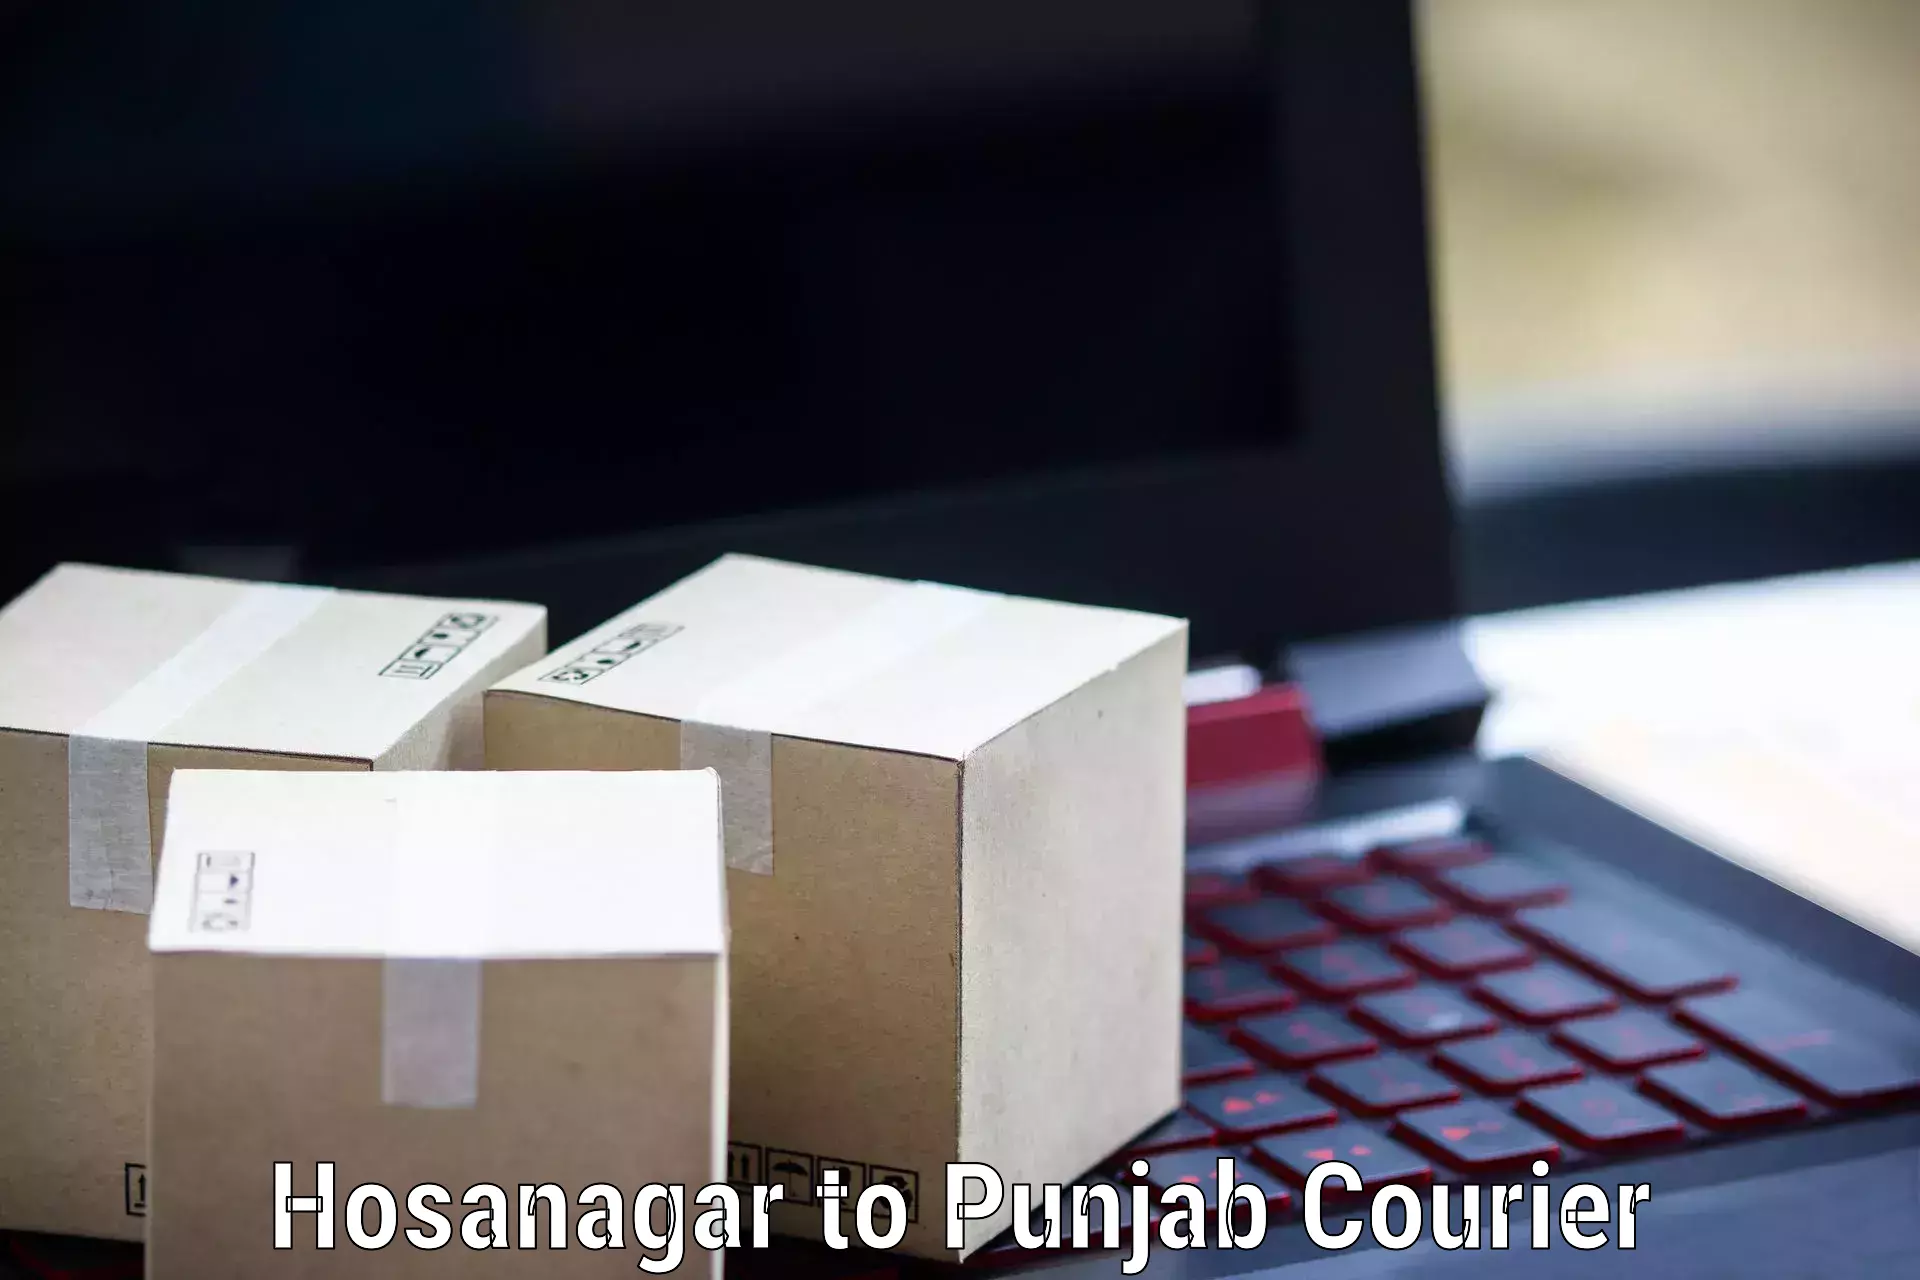 Express logistics service Hosanagar to Punjab